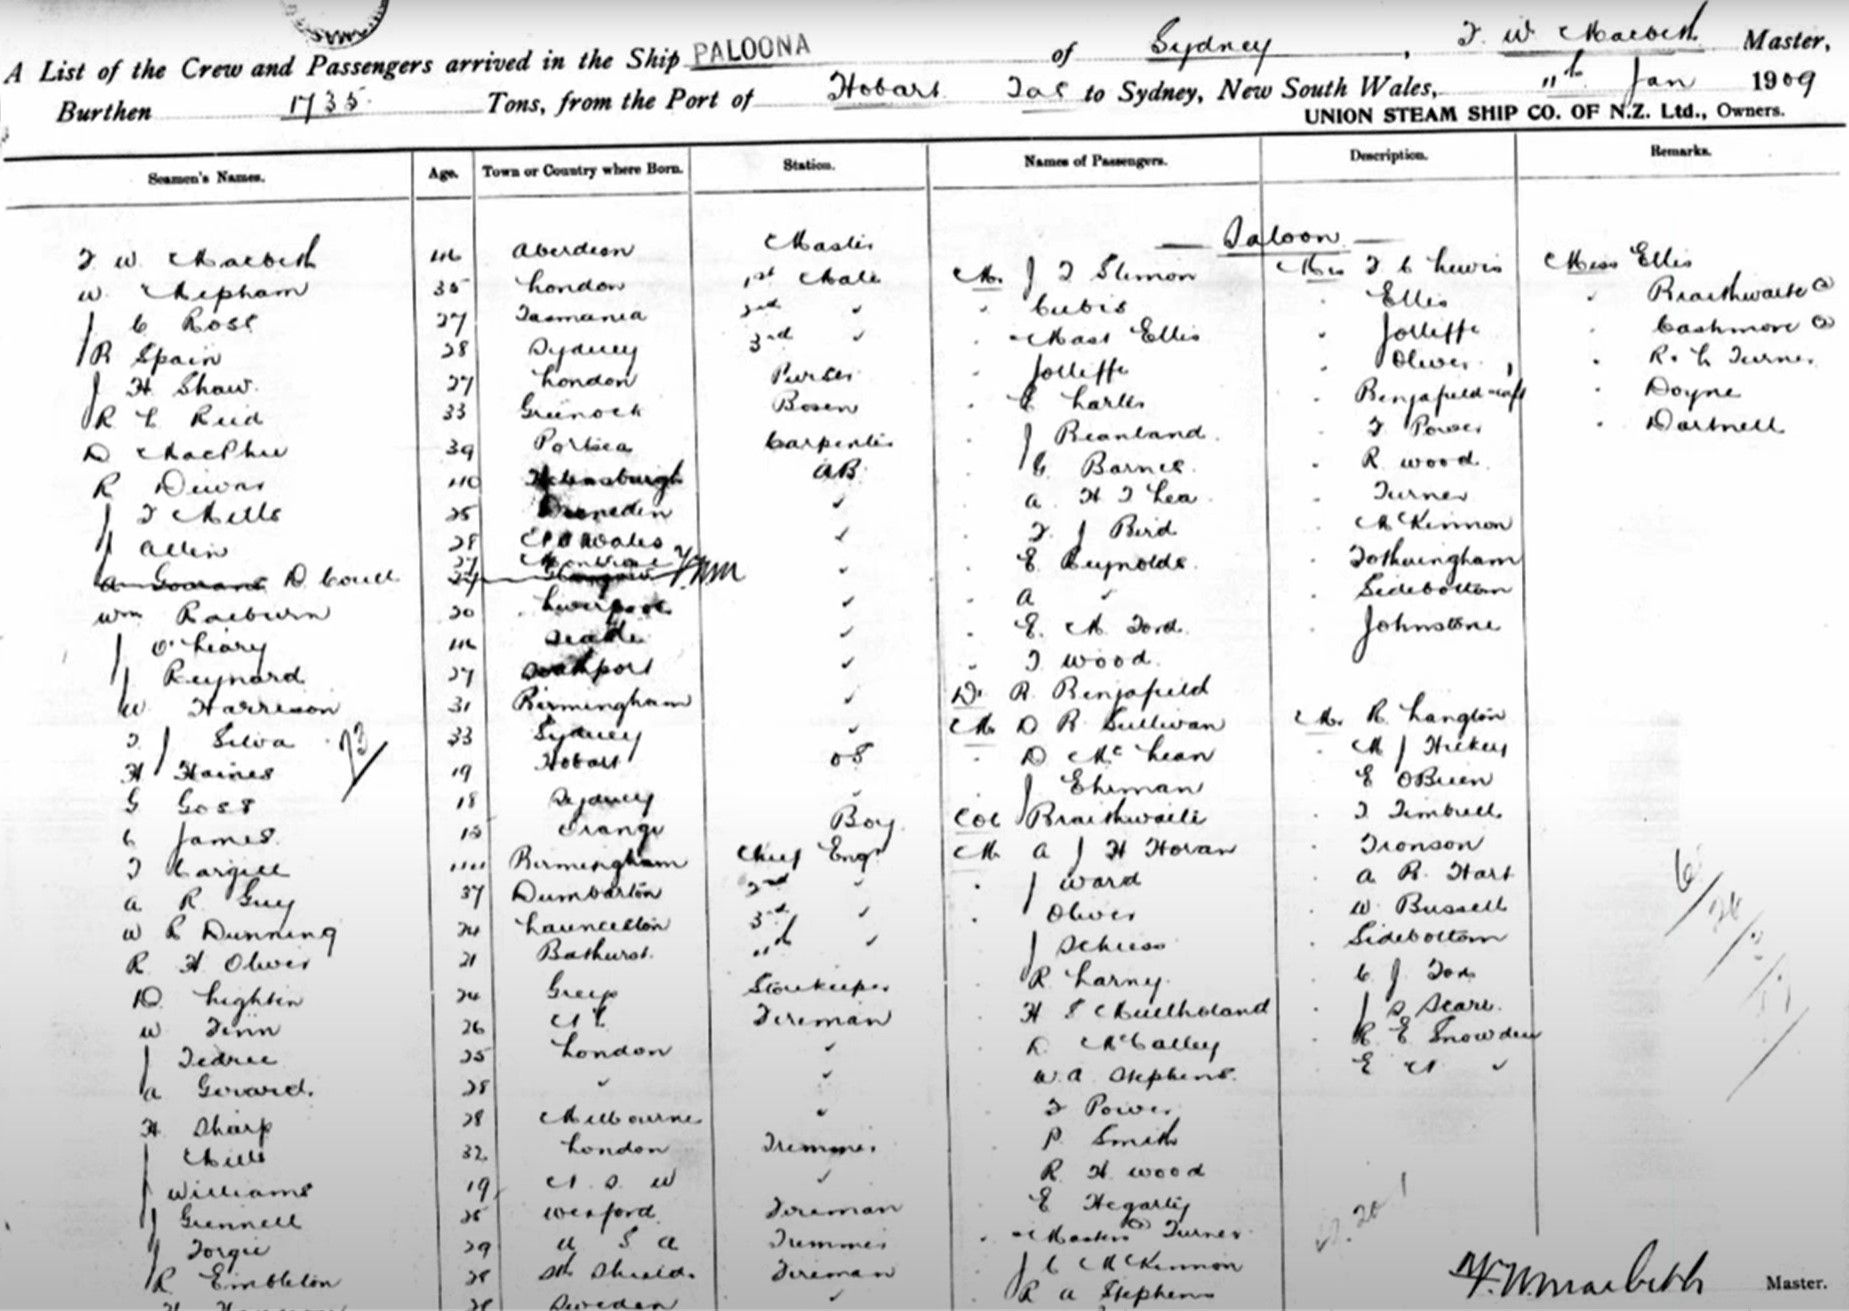 1909 Passenger list for the ship Paloona